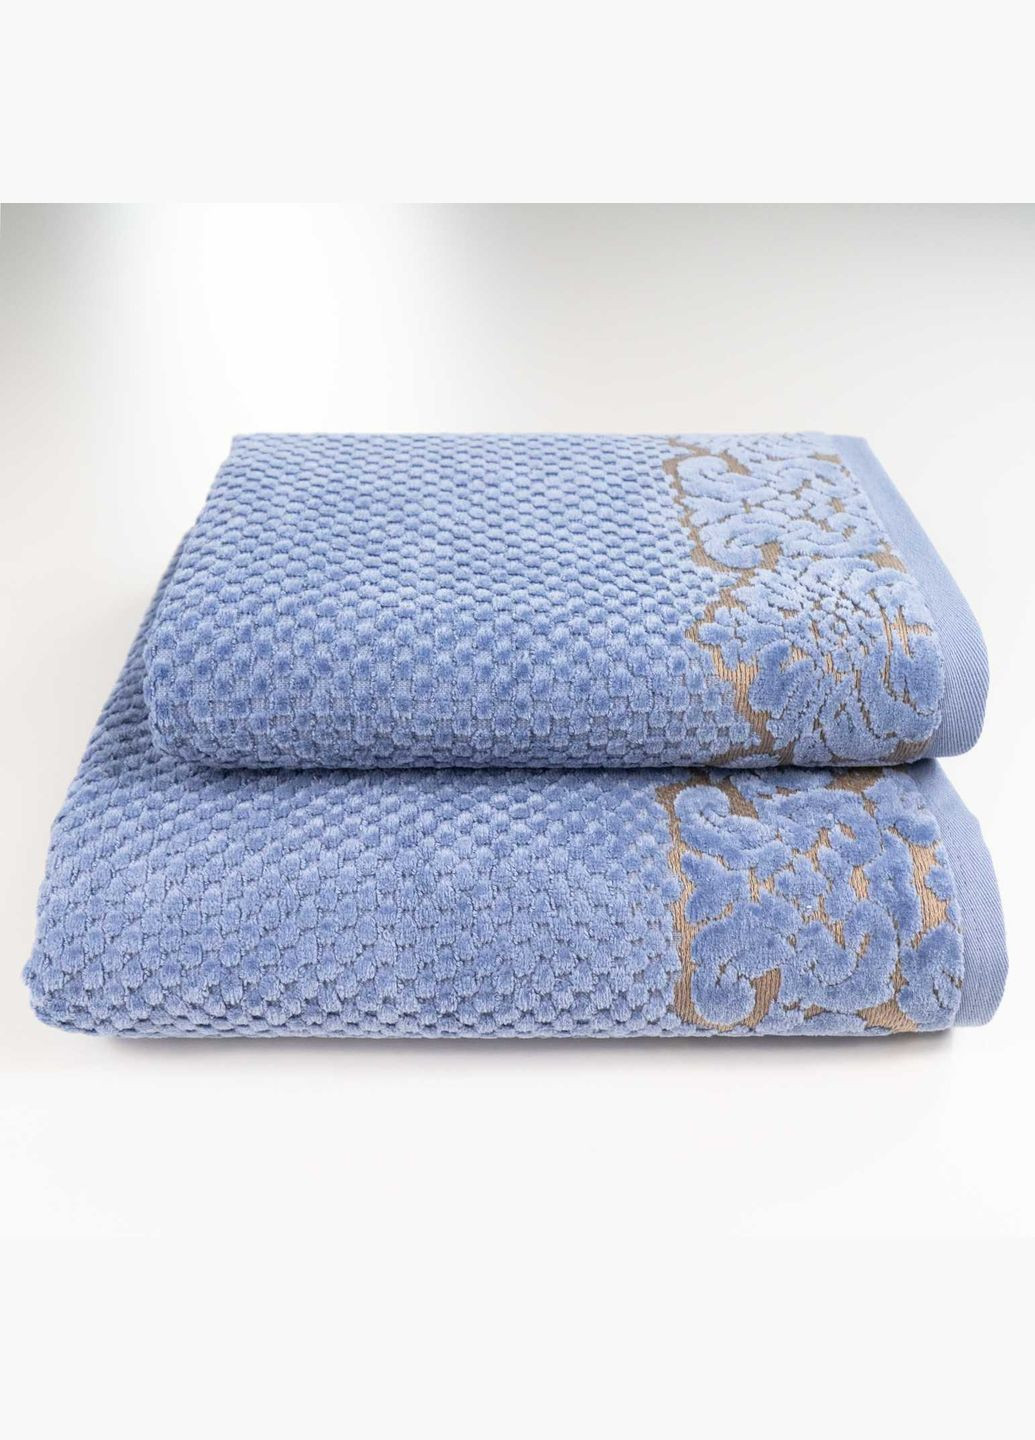 GM Textile набор махровых полотенец 2шт 50x90см, 70x140см damask премиум качества жаккардовое с велюром 550г/м2 () синий производство -